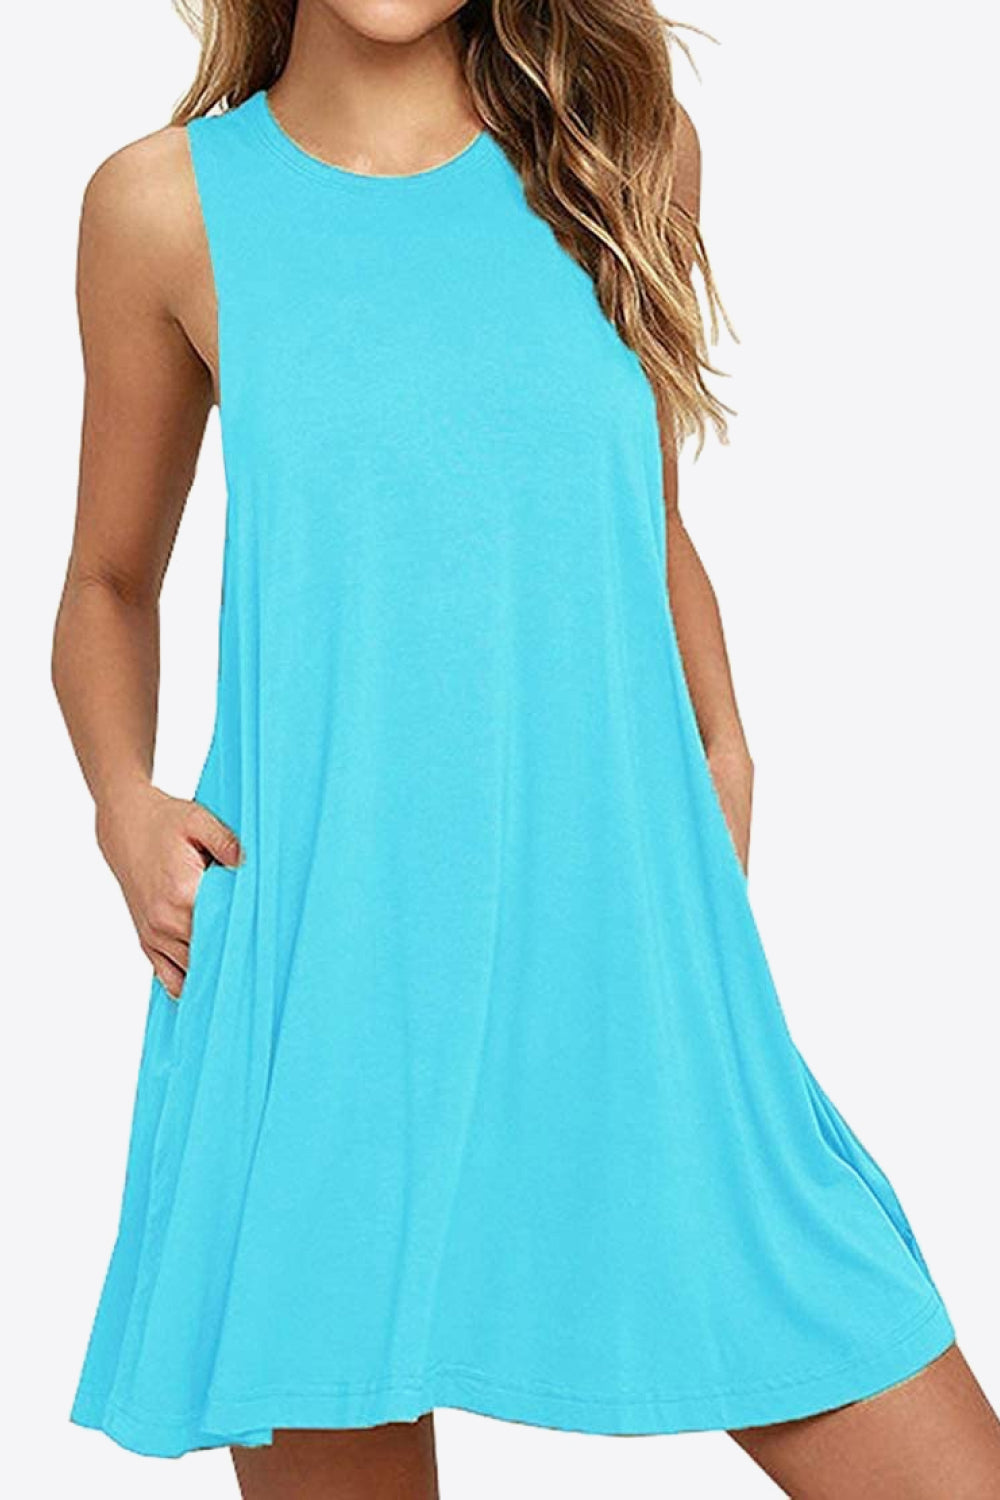 Medium Turquoise Full Size Round Neck Sleeveless Dress with Pockets